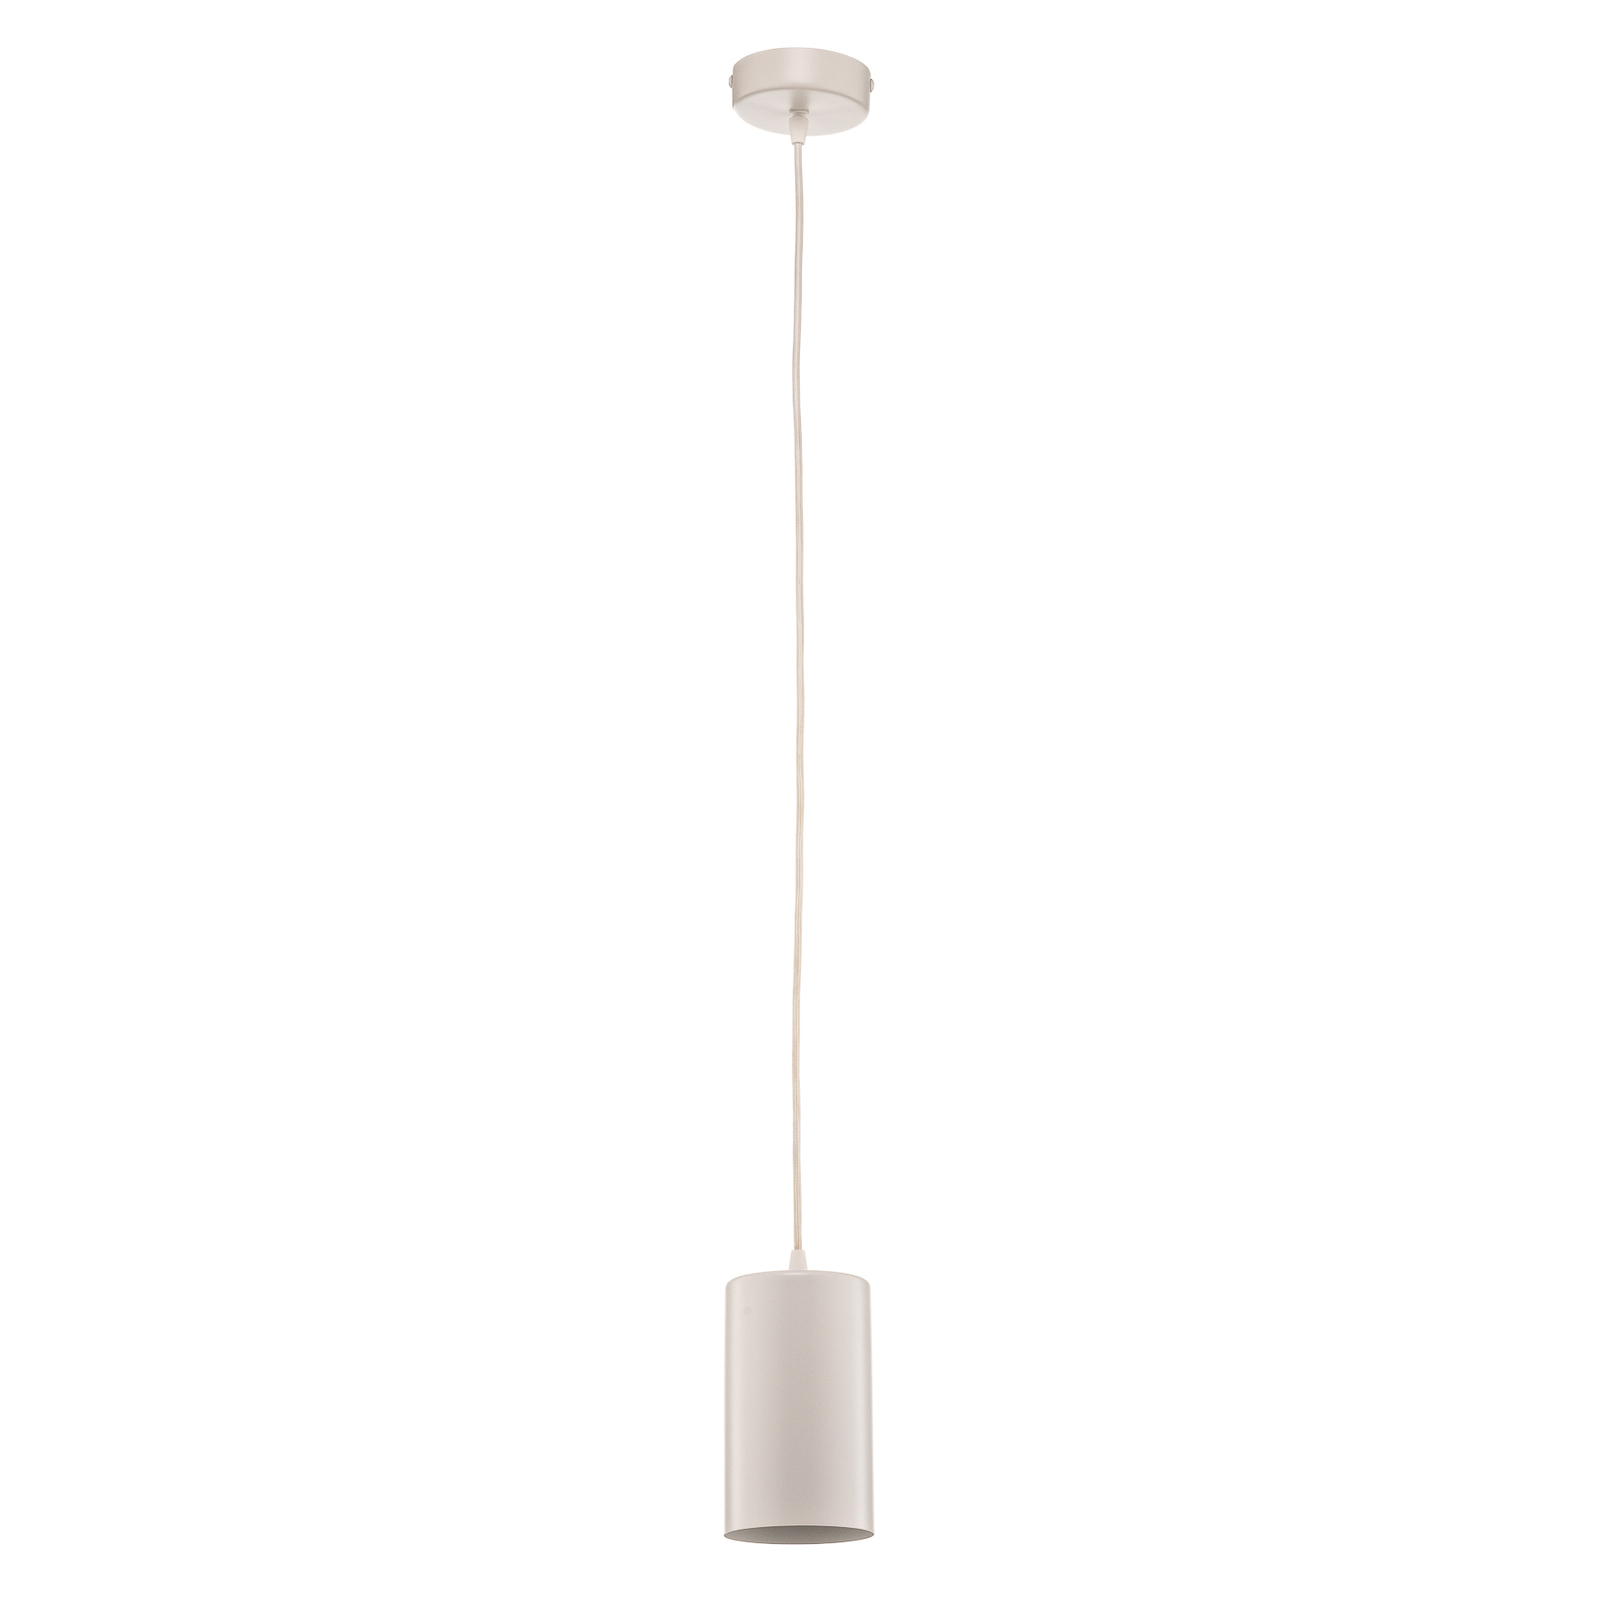 ZW Tube 170 pendant light, 1-bulb, white